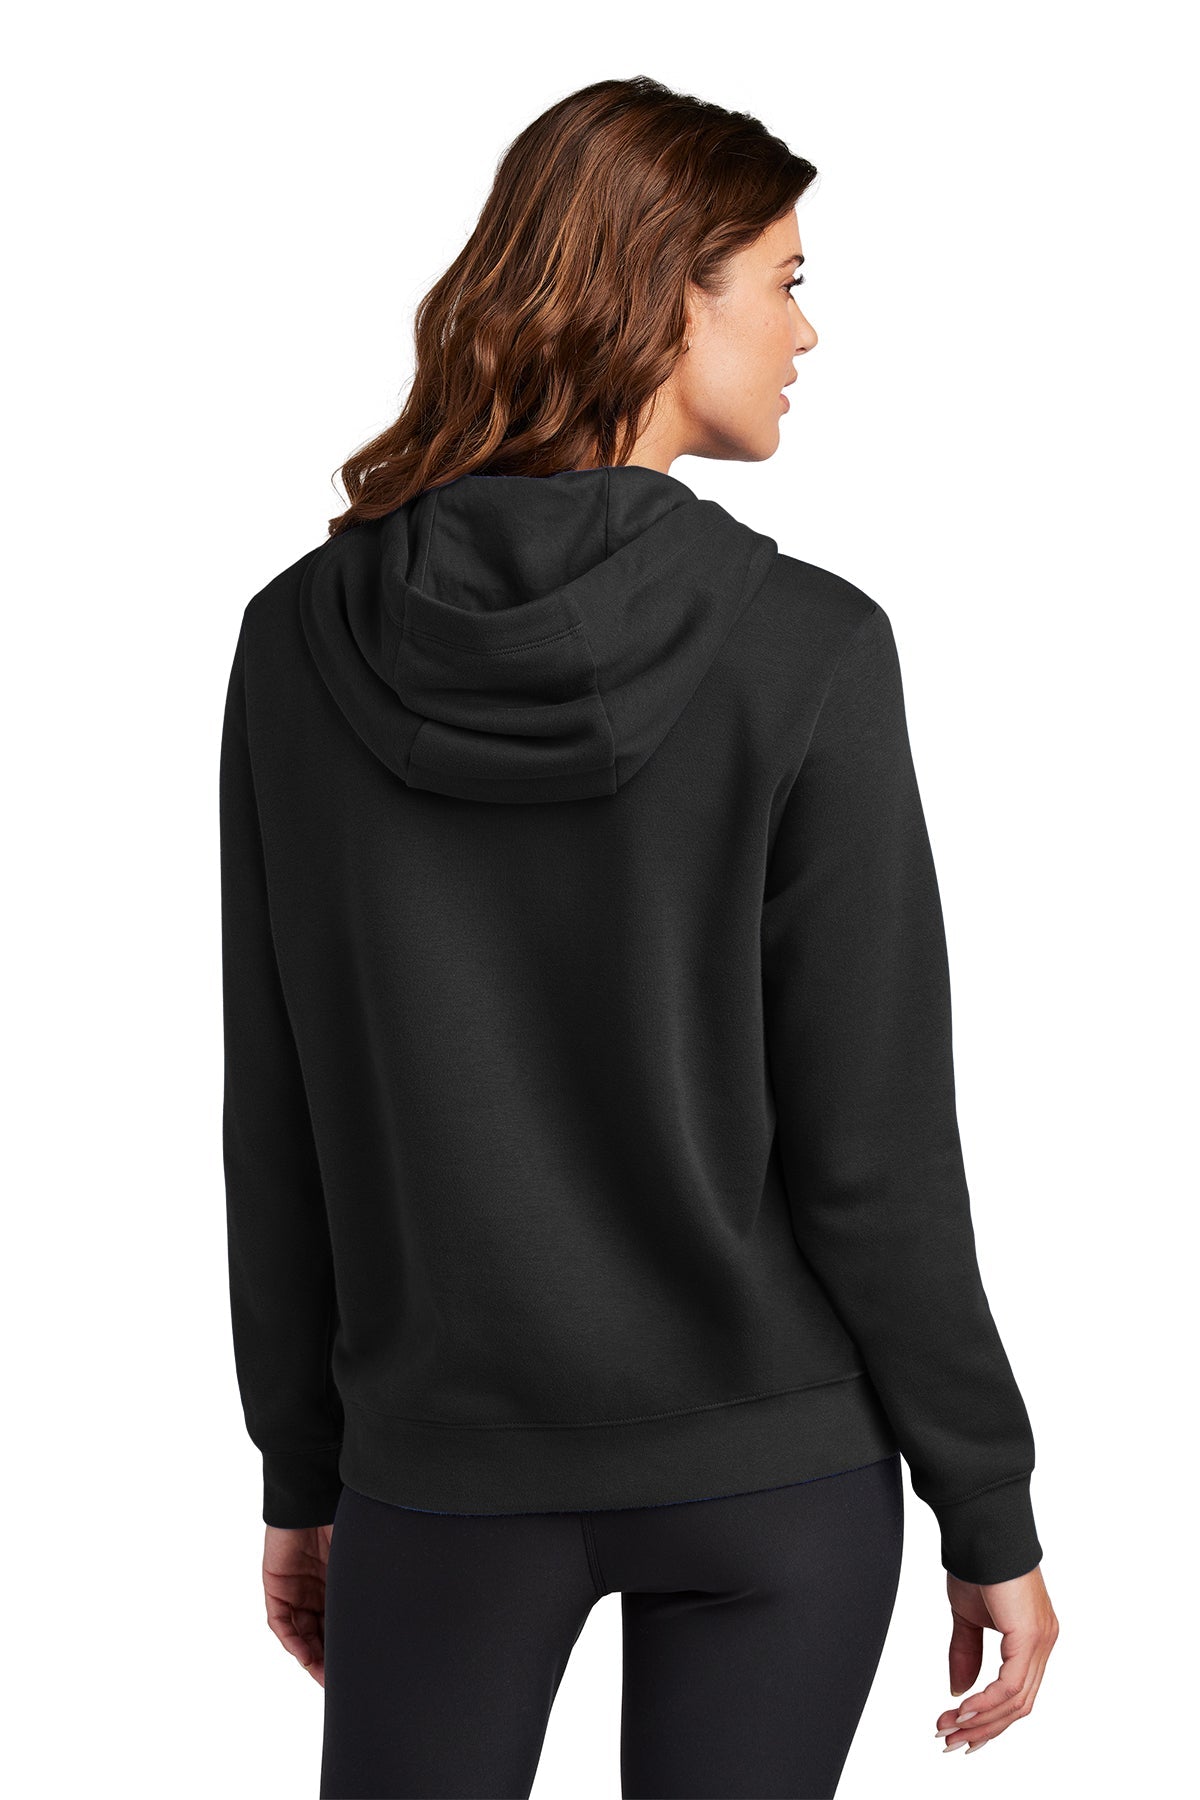 Nike Ladies Club Fleece Pullover Custom Hoodies, Black